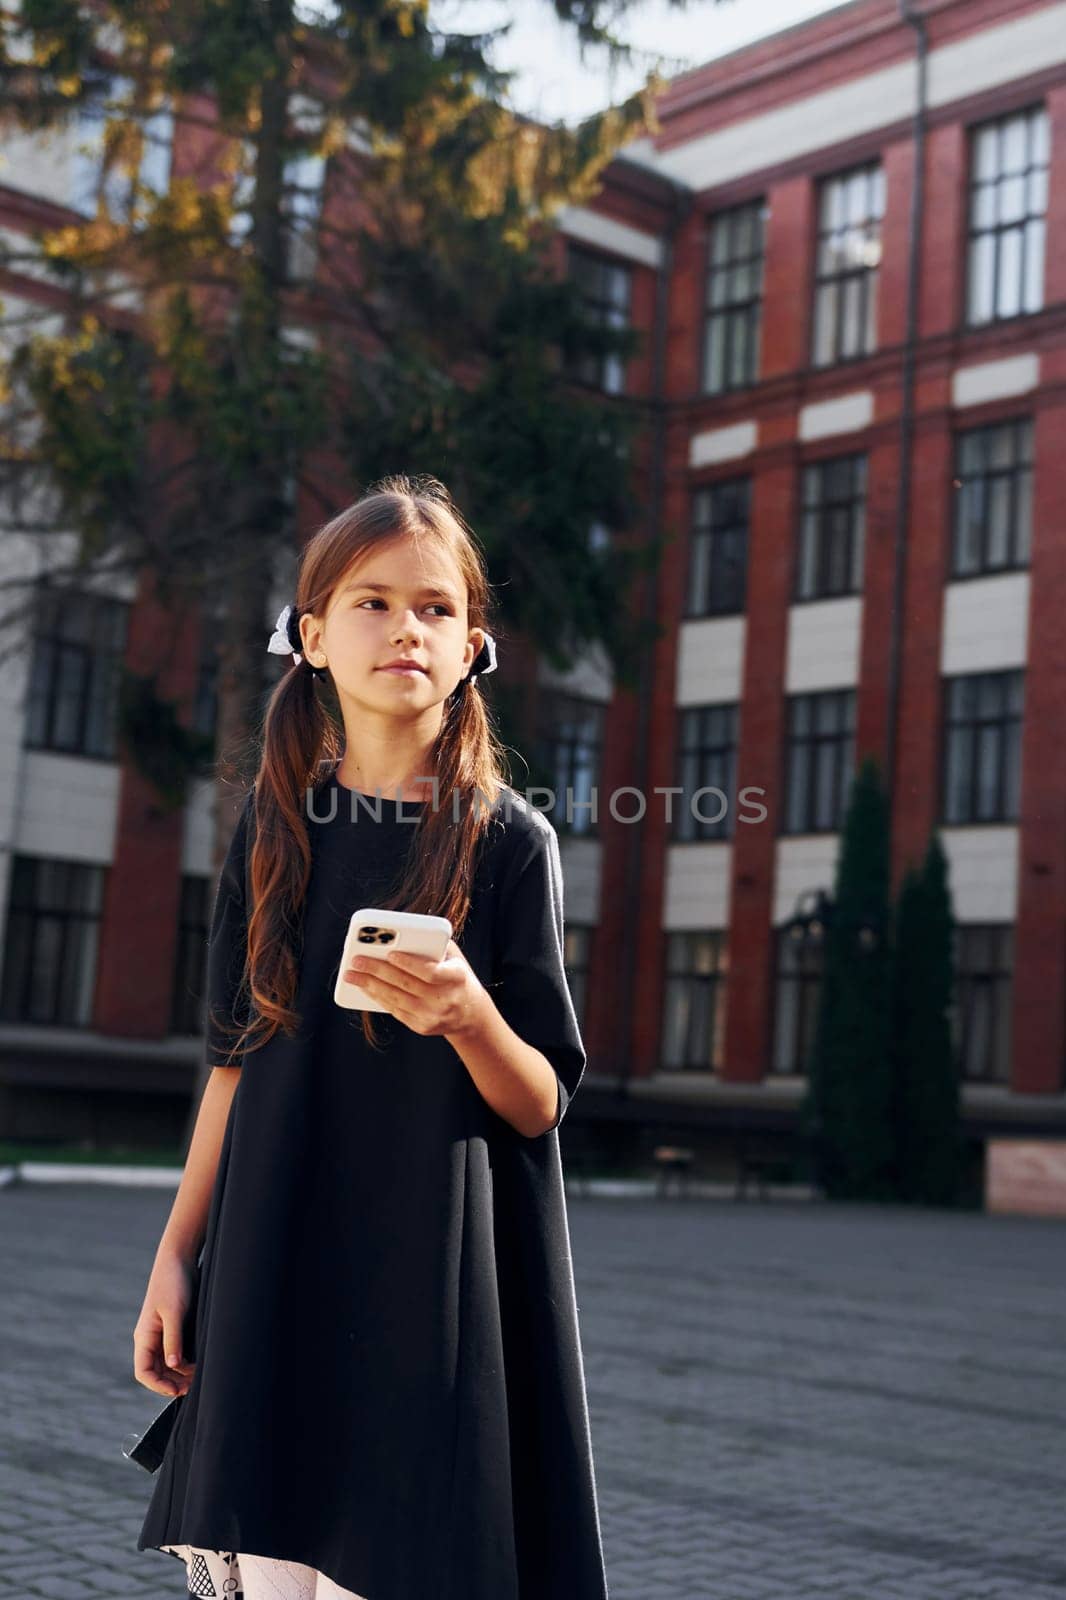 In black uniform. Schoolgirl is outside near school building.